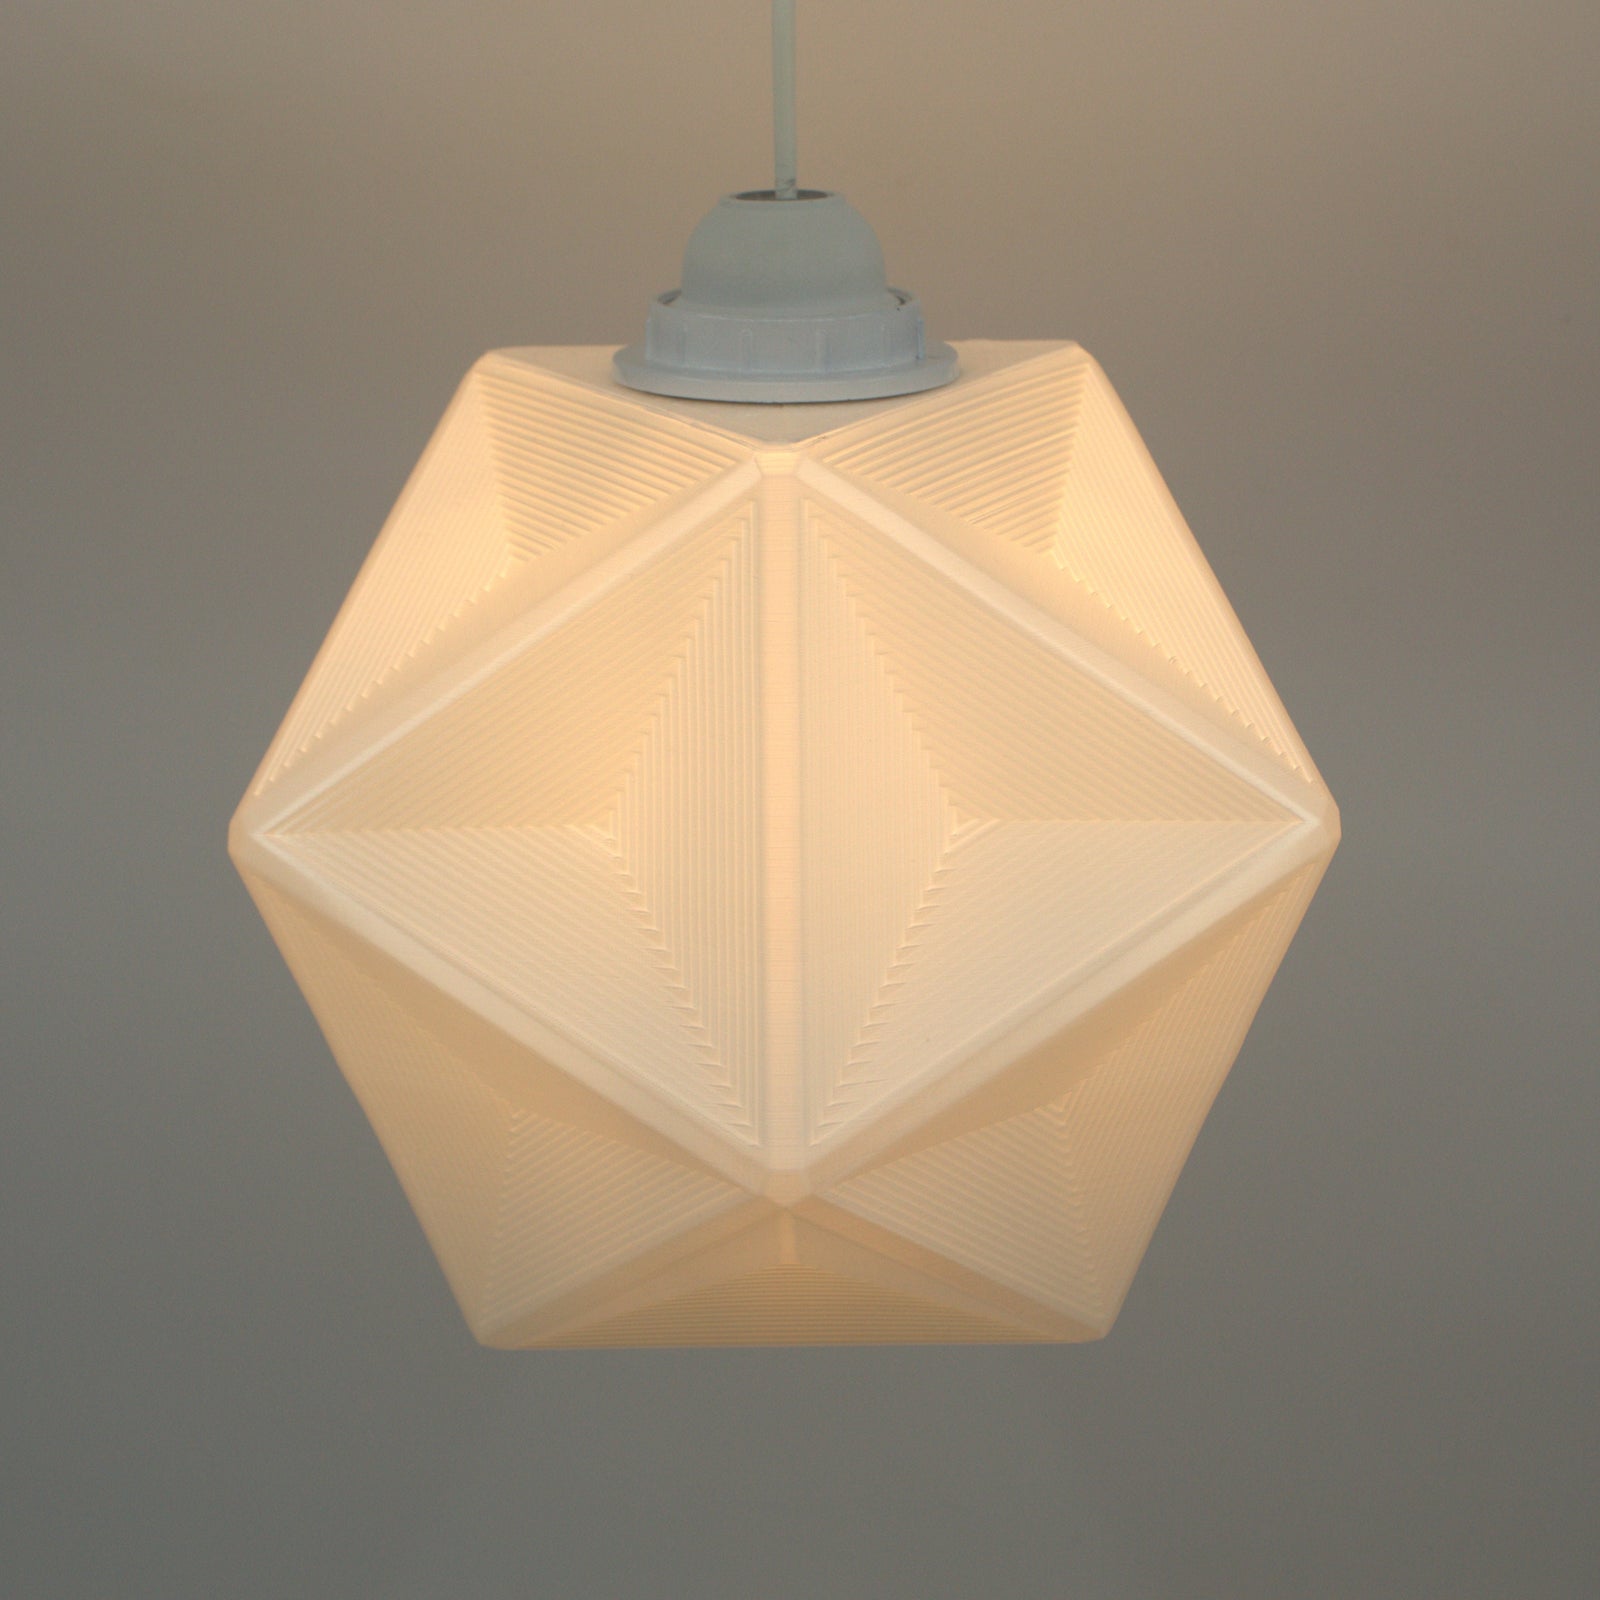 Tria Lampshade - Unique Modern Pendant Lampshade